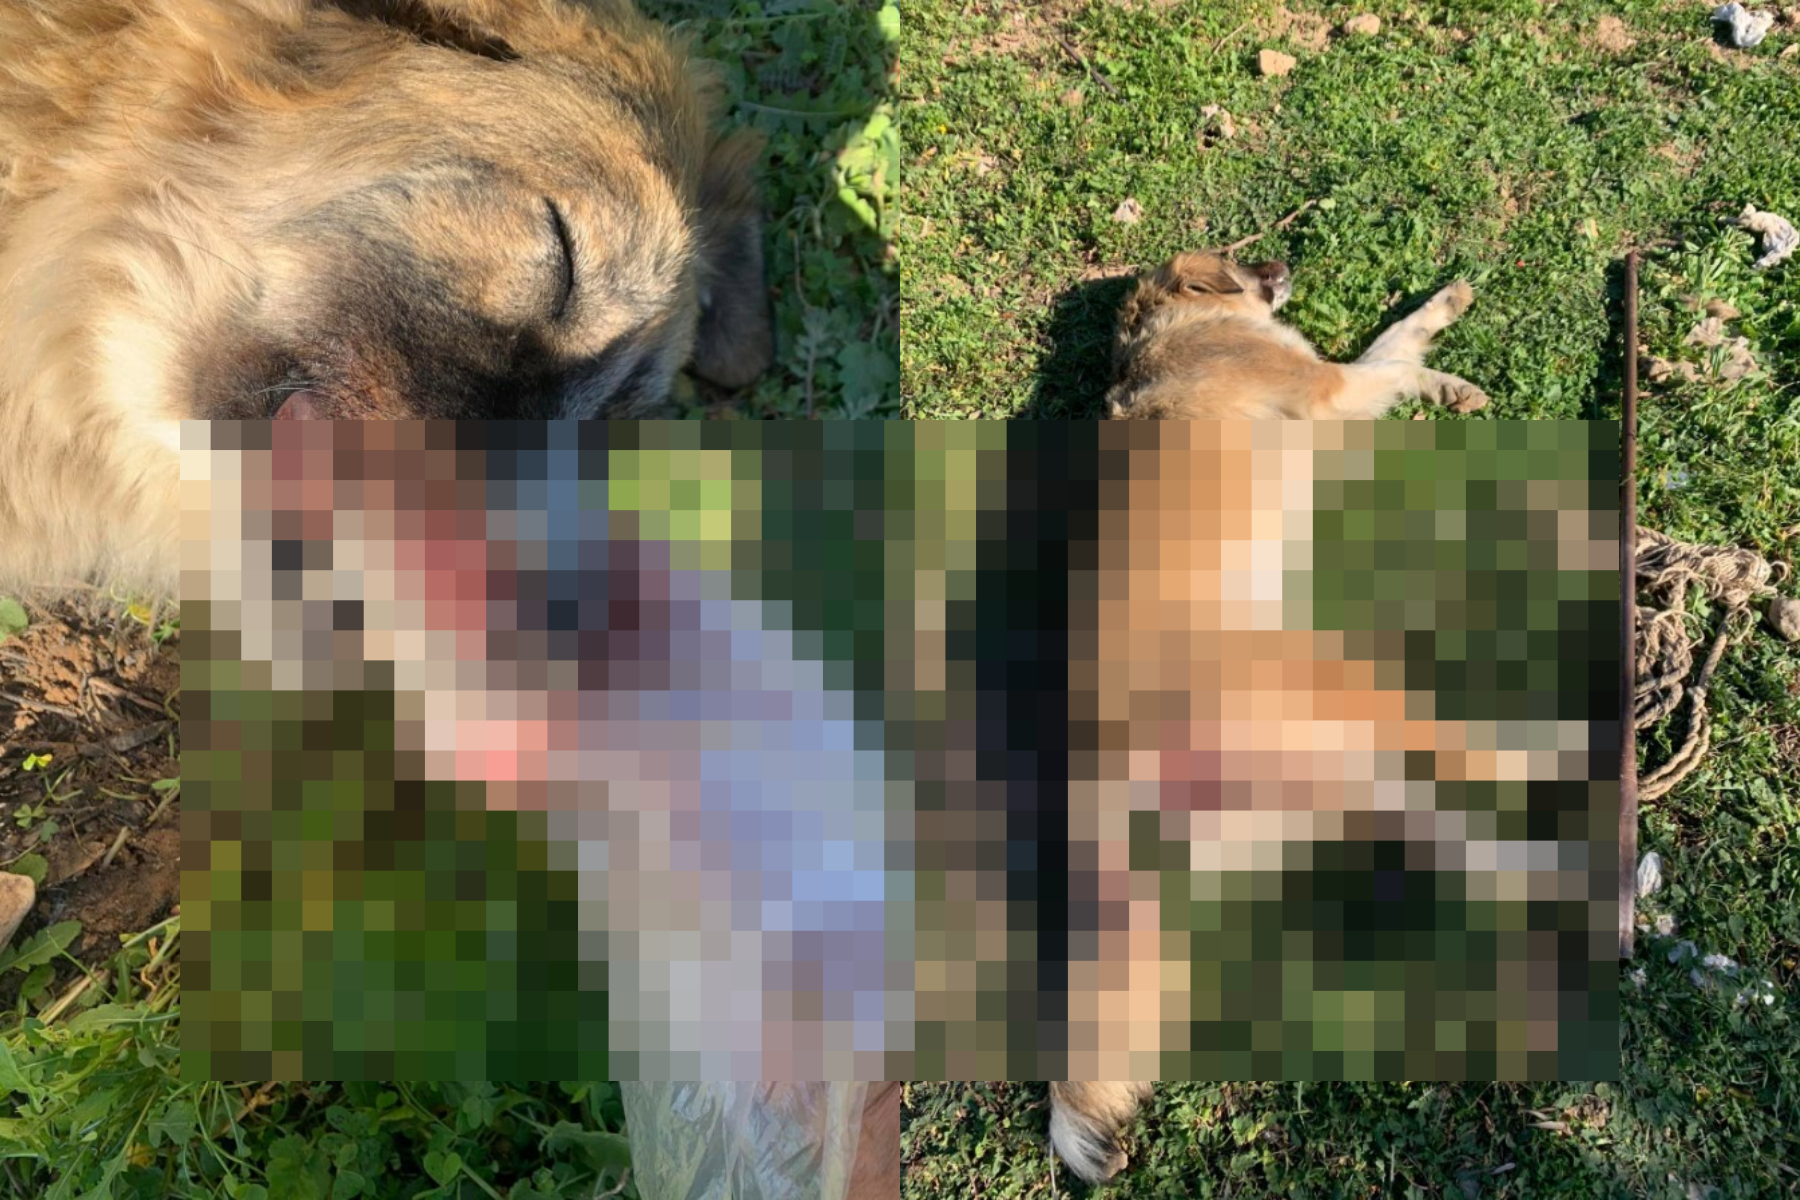 Μέγαρα: Κακοποίησαν και σκότωσαν σκυλίτσα - Την χτύπησαν με αεροβόλο και την τρύπησαν με σίδερο